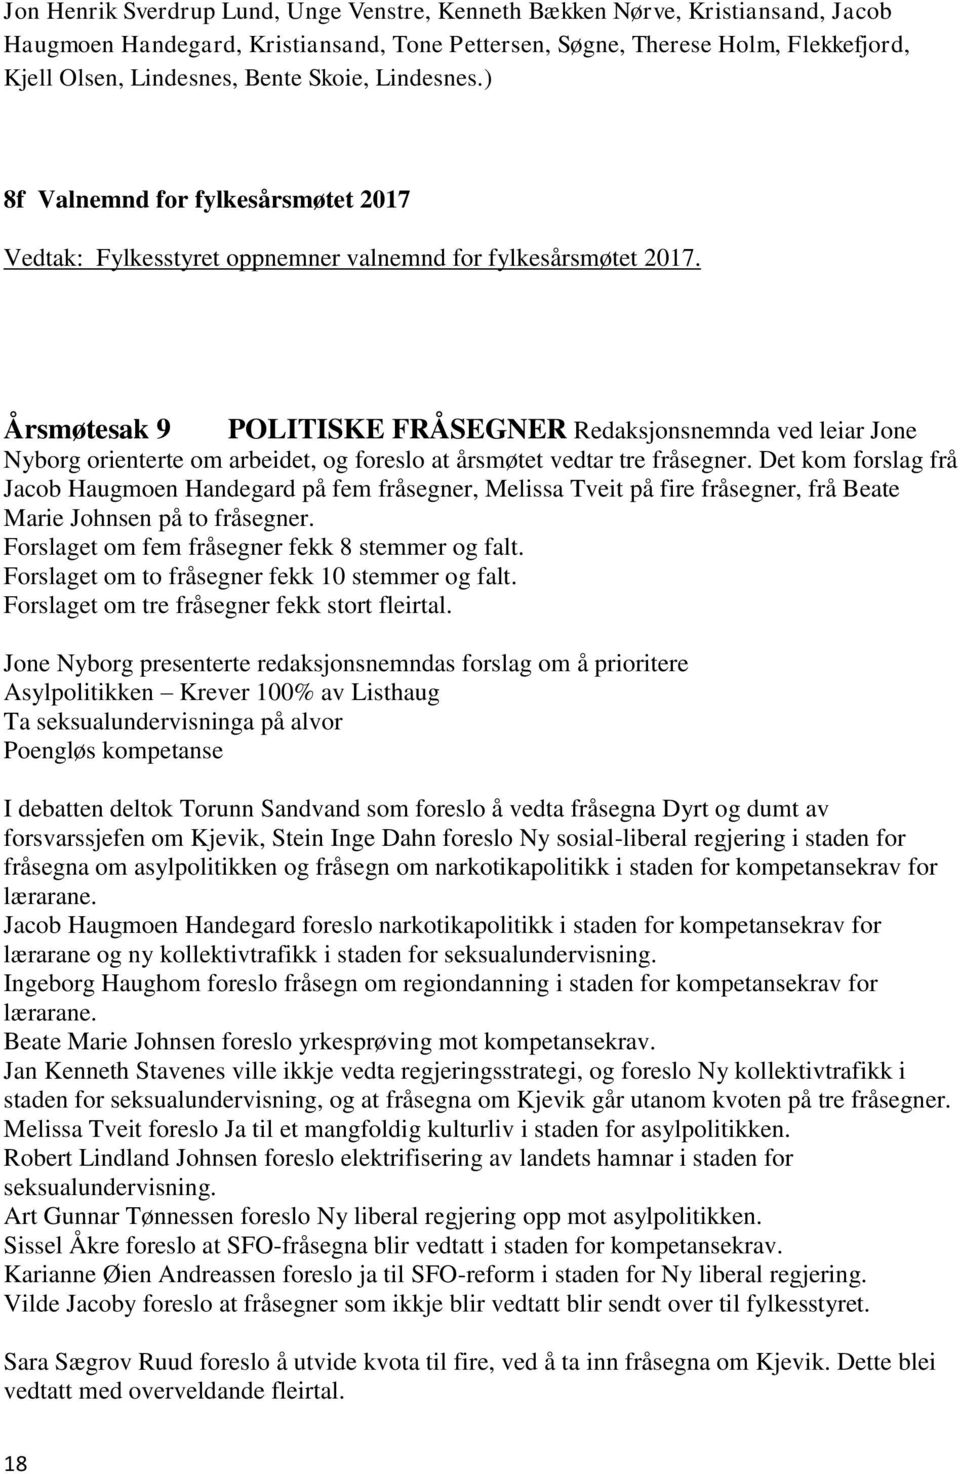 Årsmøtesak 9 POLITISKE FRÅSEGNER Redaksjonsnemnda ved leiar Jone Nyborg orienterte om arbeidet, og foreslo at årsmøtet vedtar tre fråsegner.